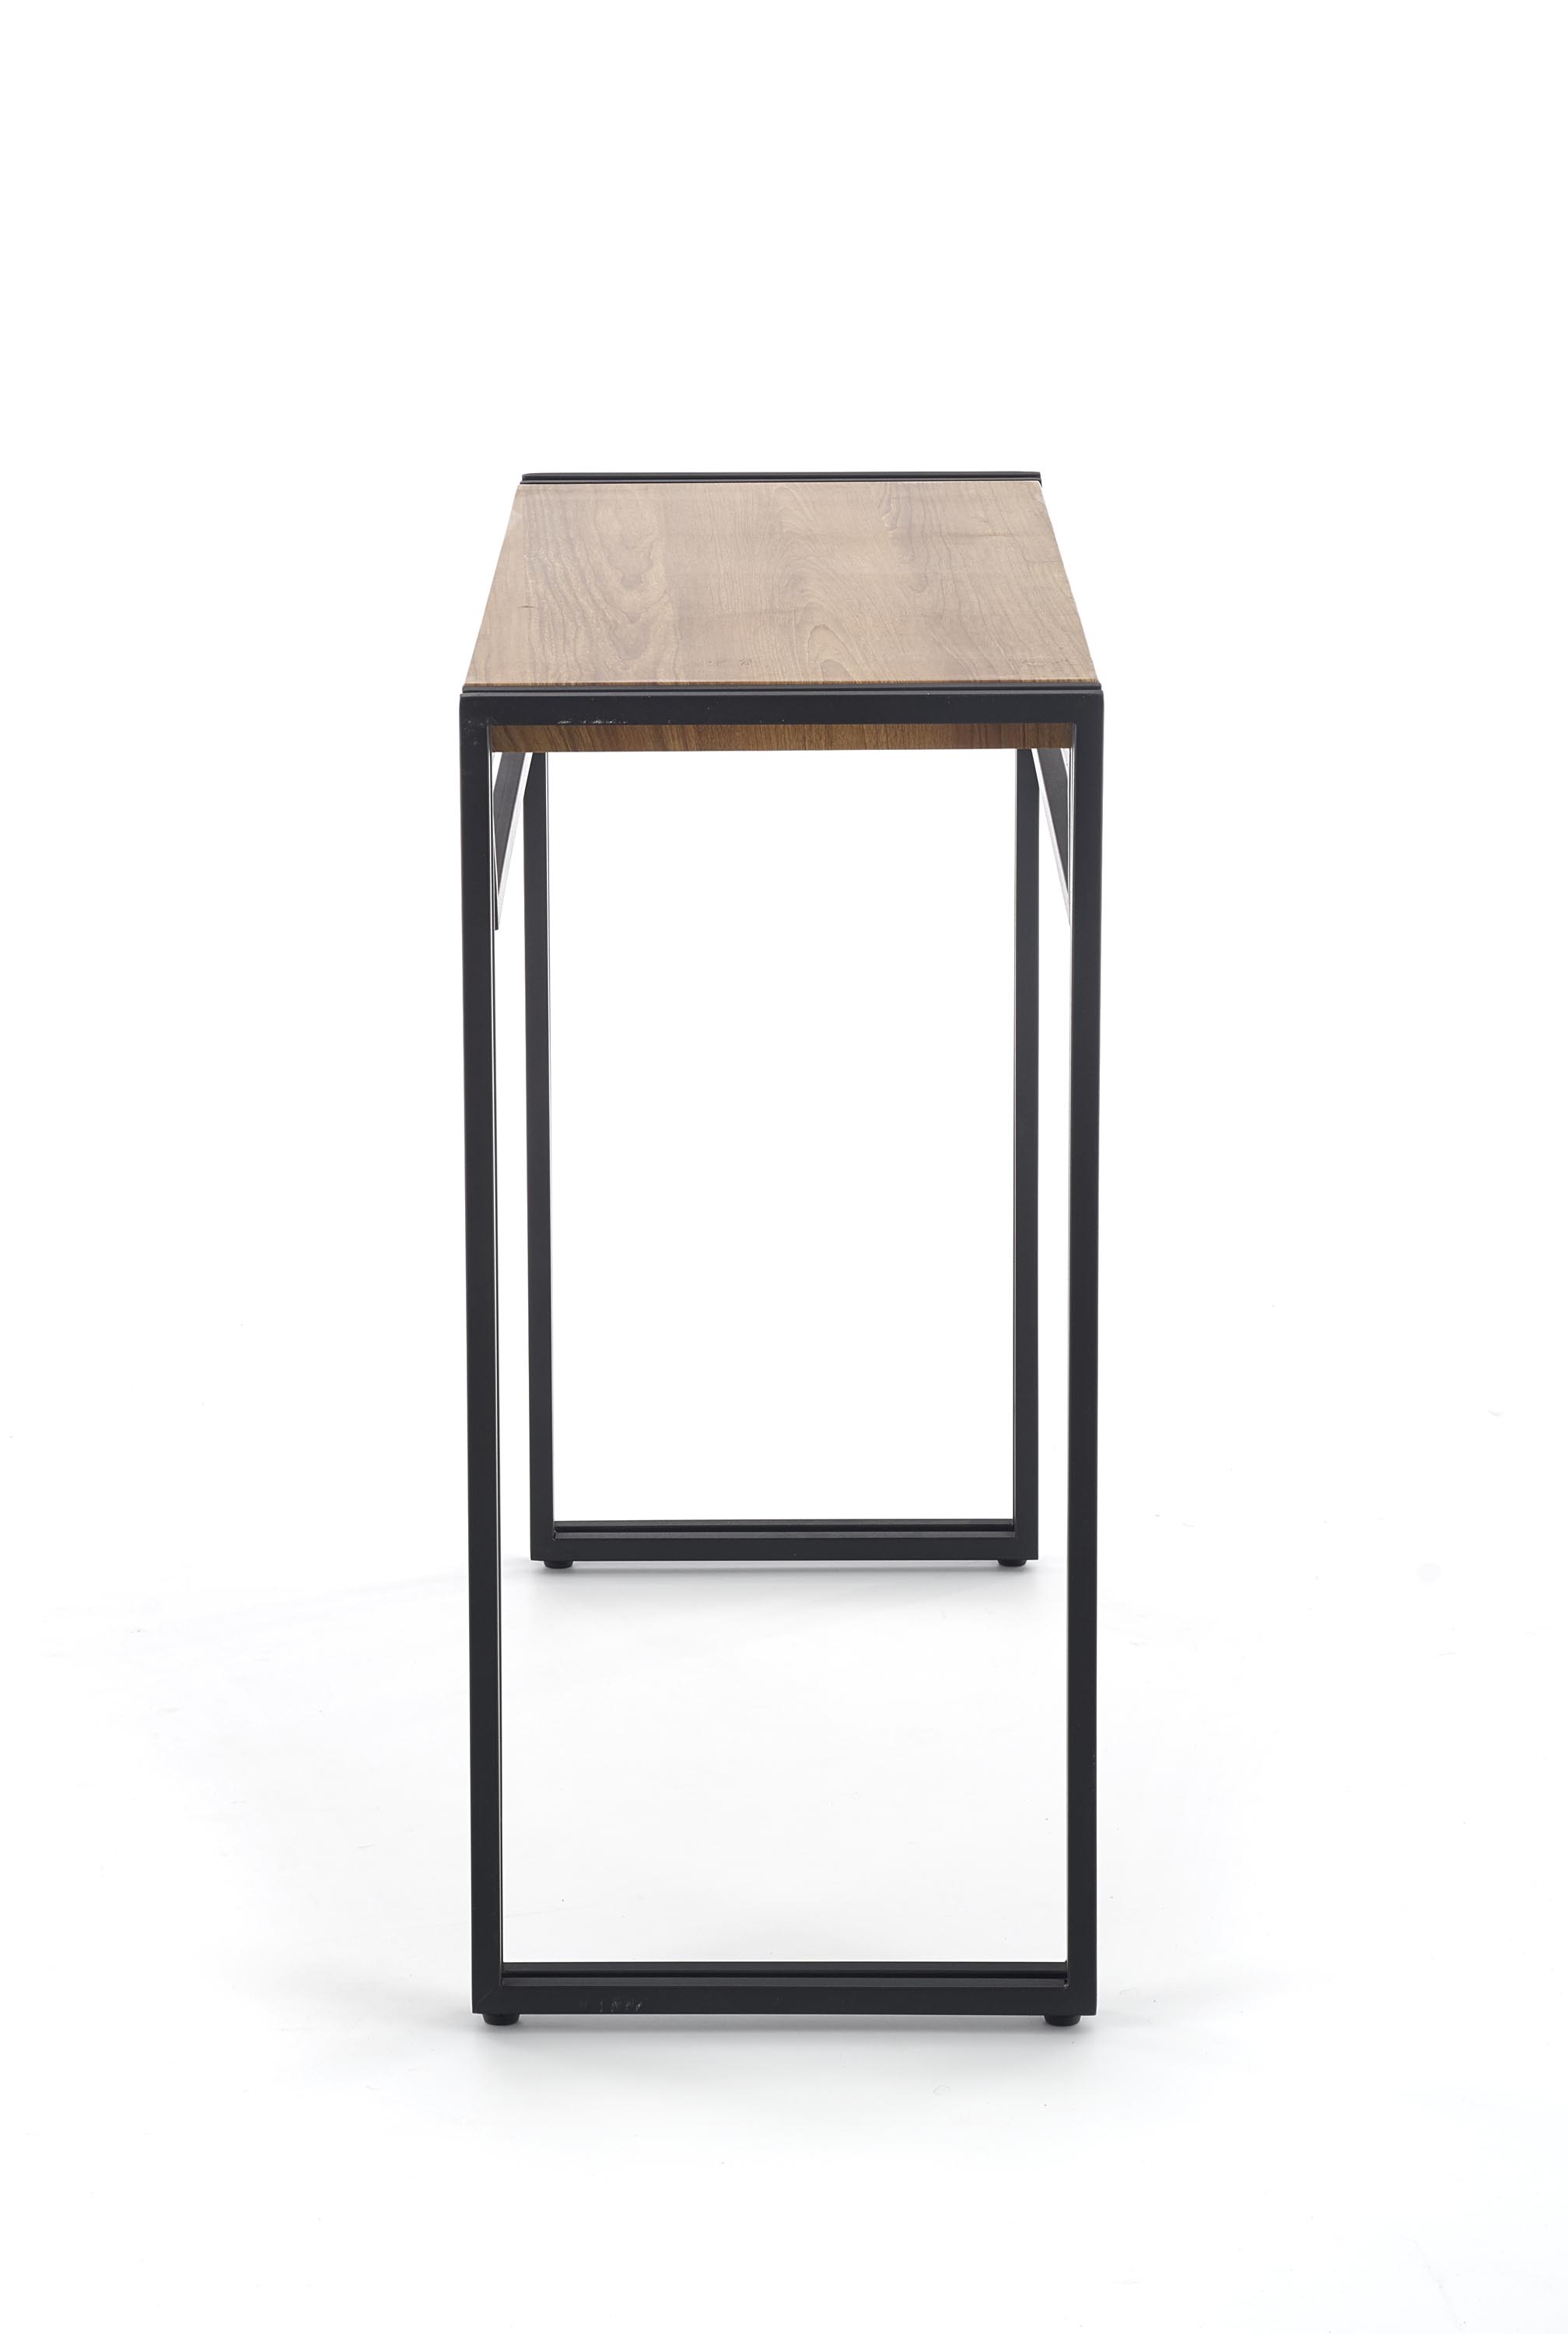 Industrialne biurko Bolivar KN1 na metalowych nogach 90 cm - dąb złoty / czarny podręczne biurko